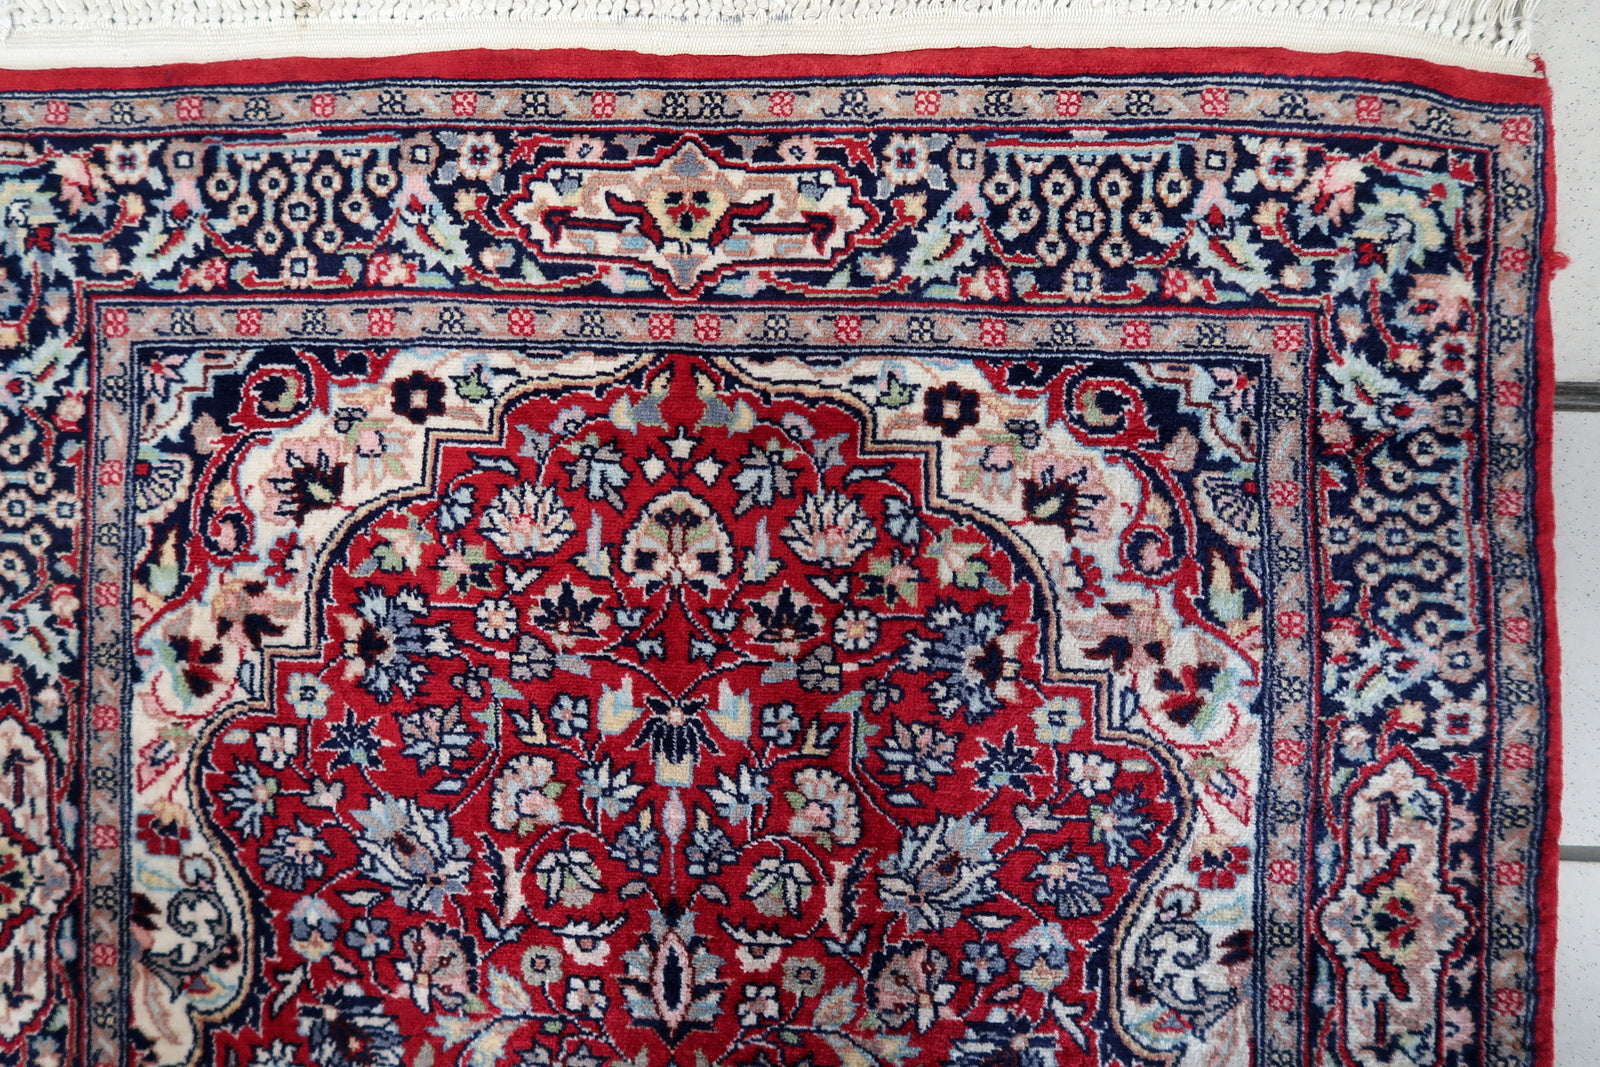 Intricate Kashan Rug Pattern